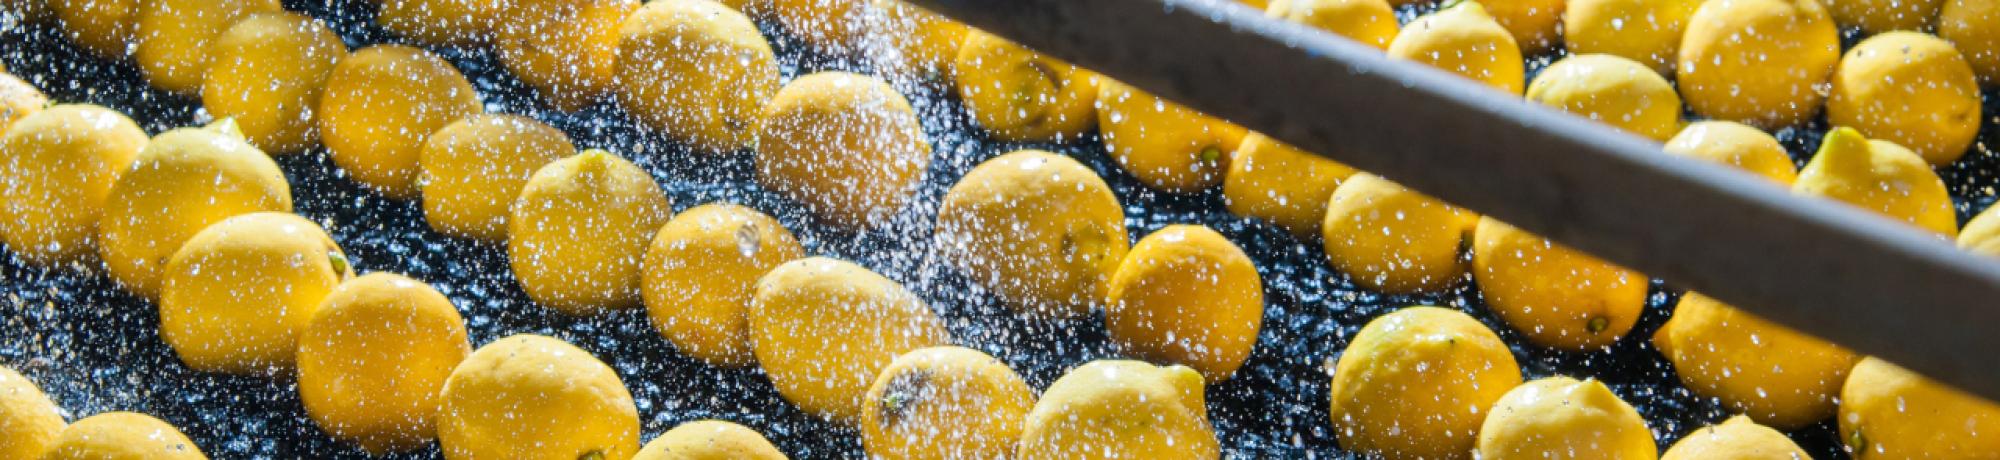 Lemons image postharvest